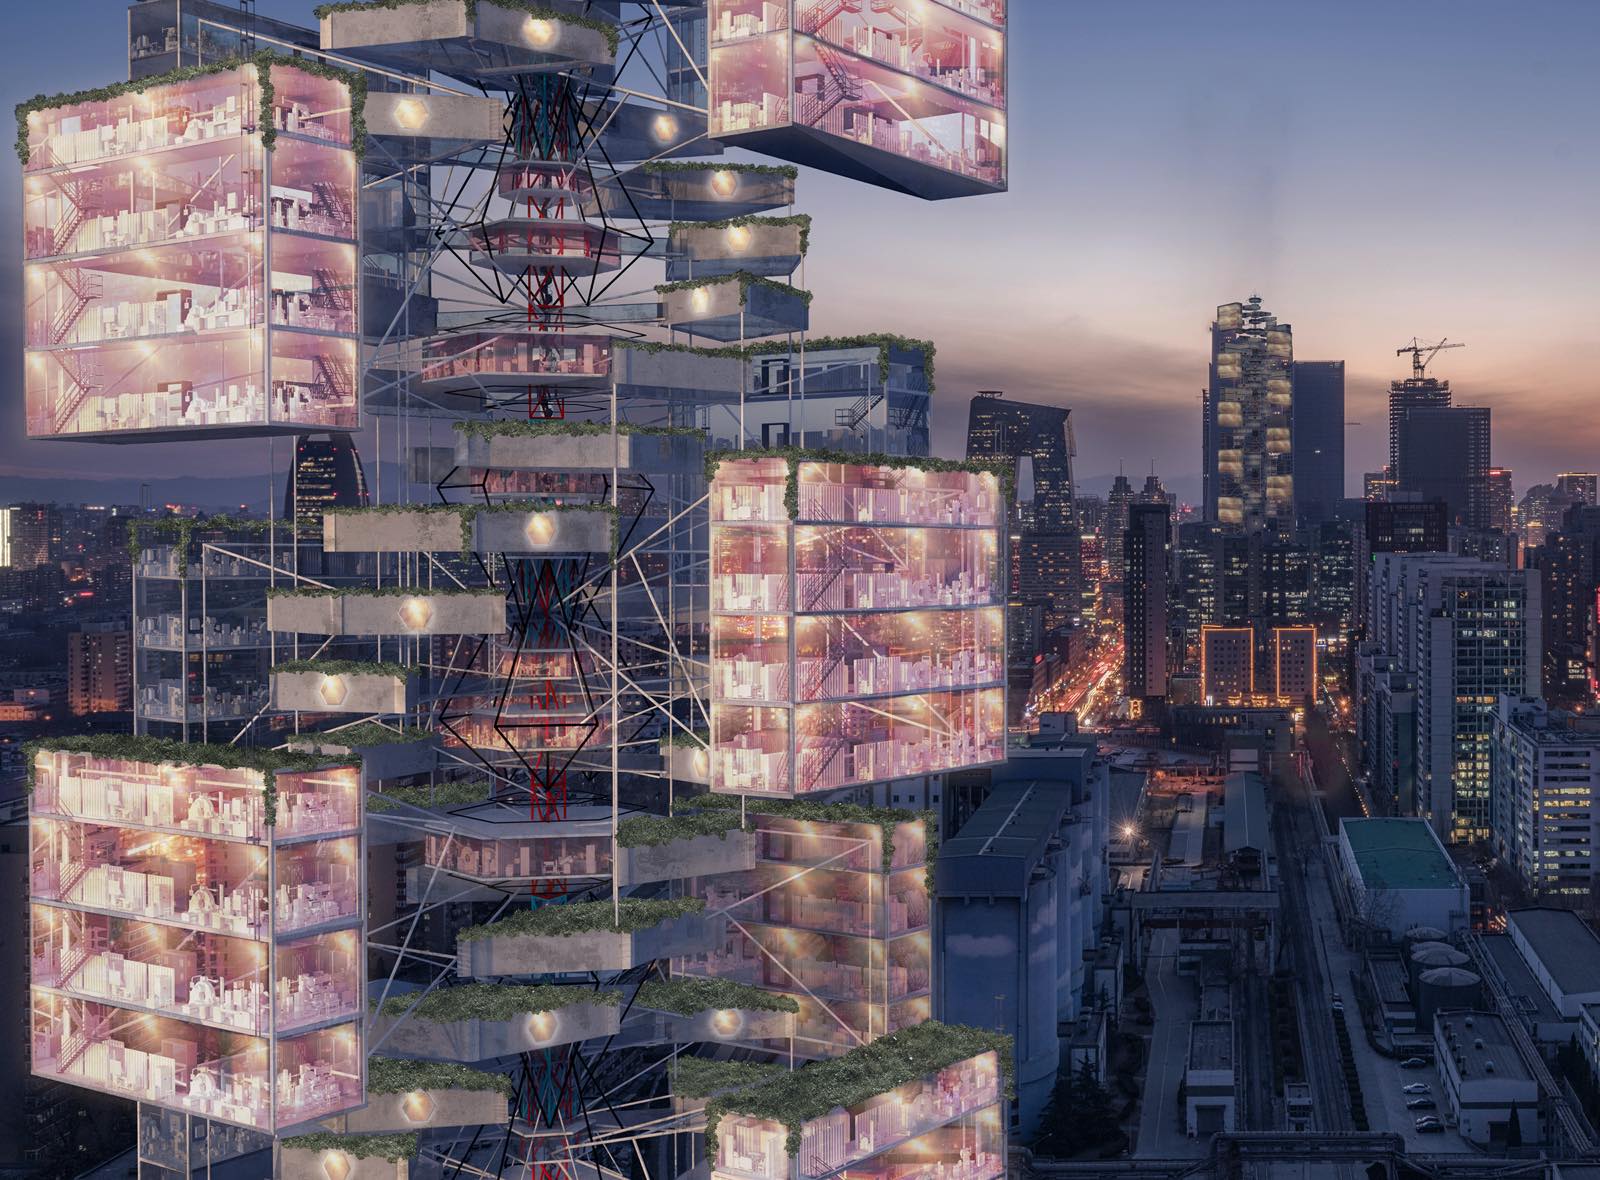 エピデミック バベルはコロナウイルスパンデミックへの対応として設計された超高層ビルのコンセプト Re Urbanization 再都市化